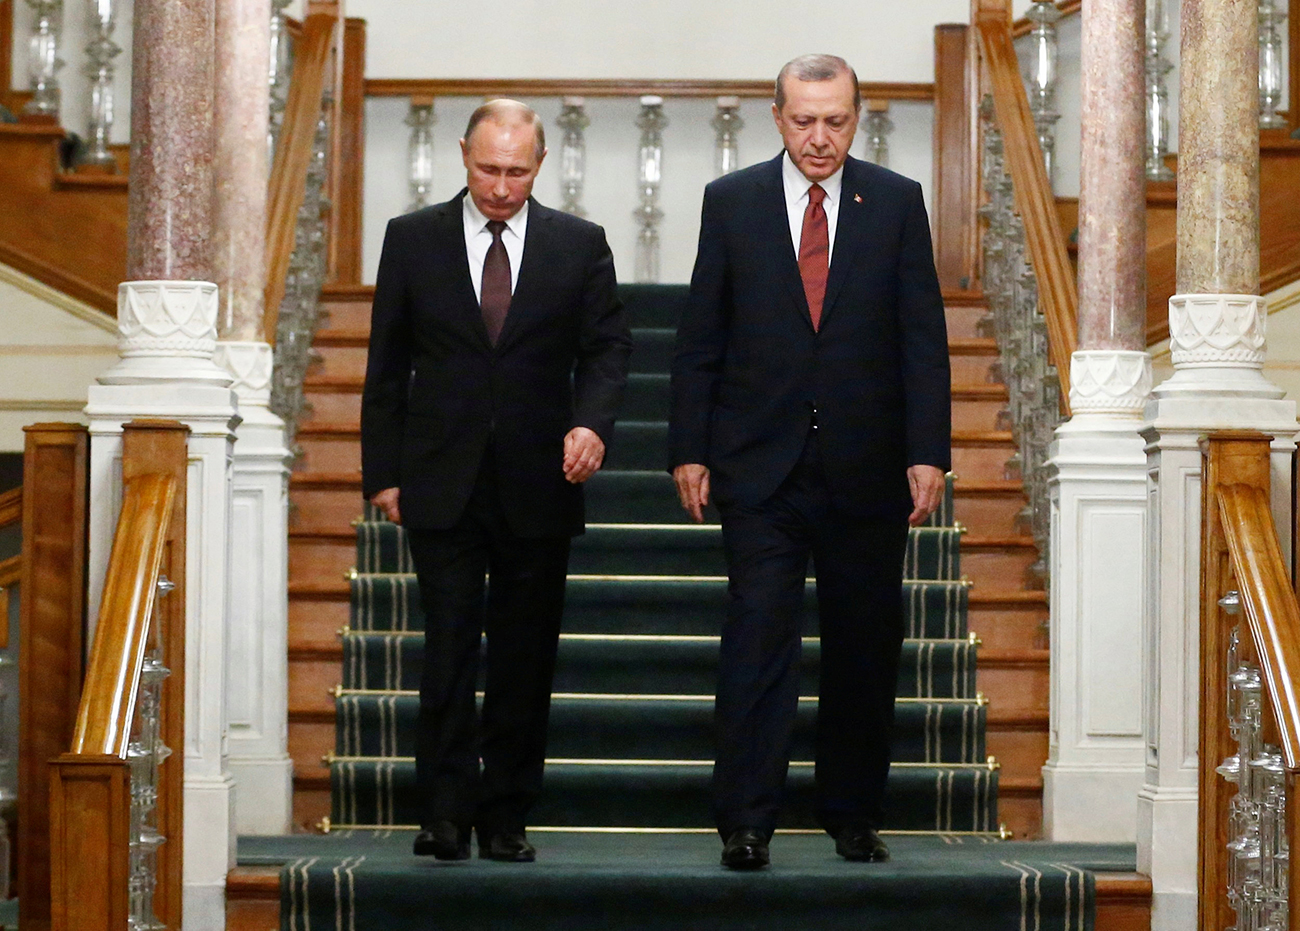 El presidente Vladímir Putin (izquierda) con su par turco Recep Tayyip Erdogan durante su encuentro en Estambul, Turquía, el 10 de octubre de 2016.